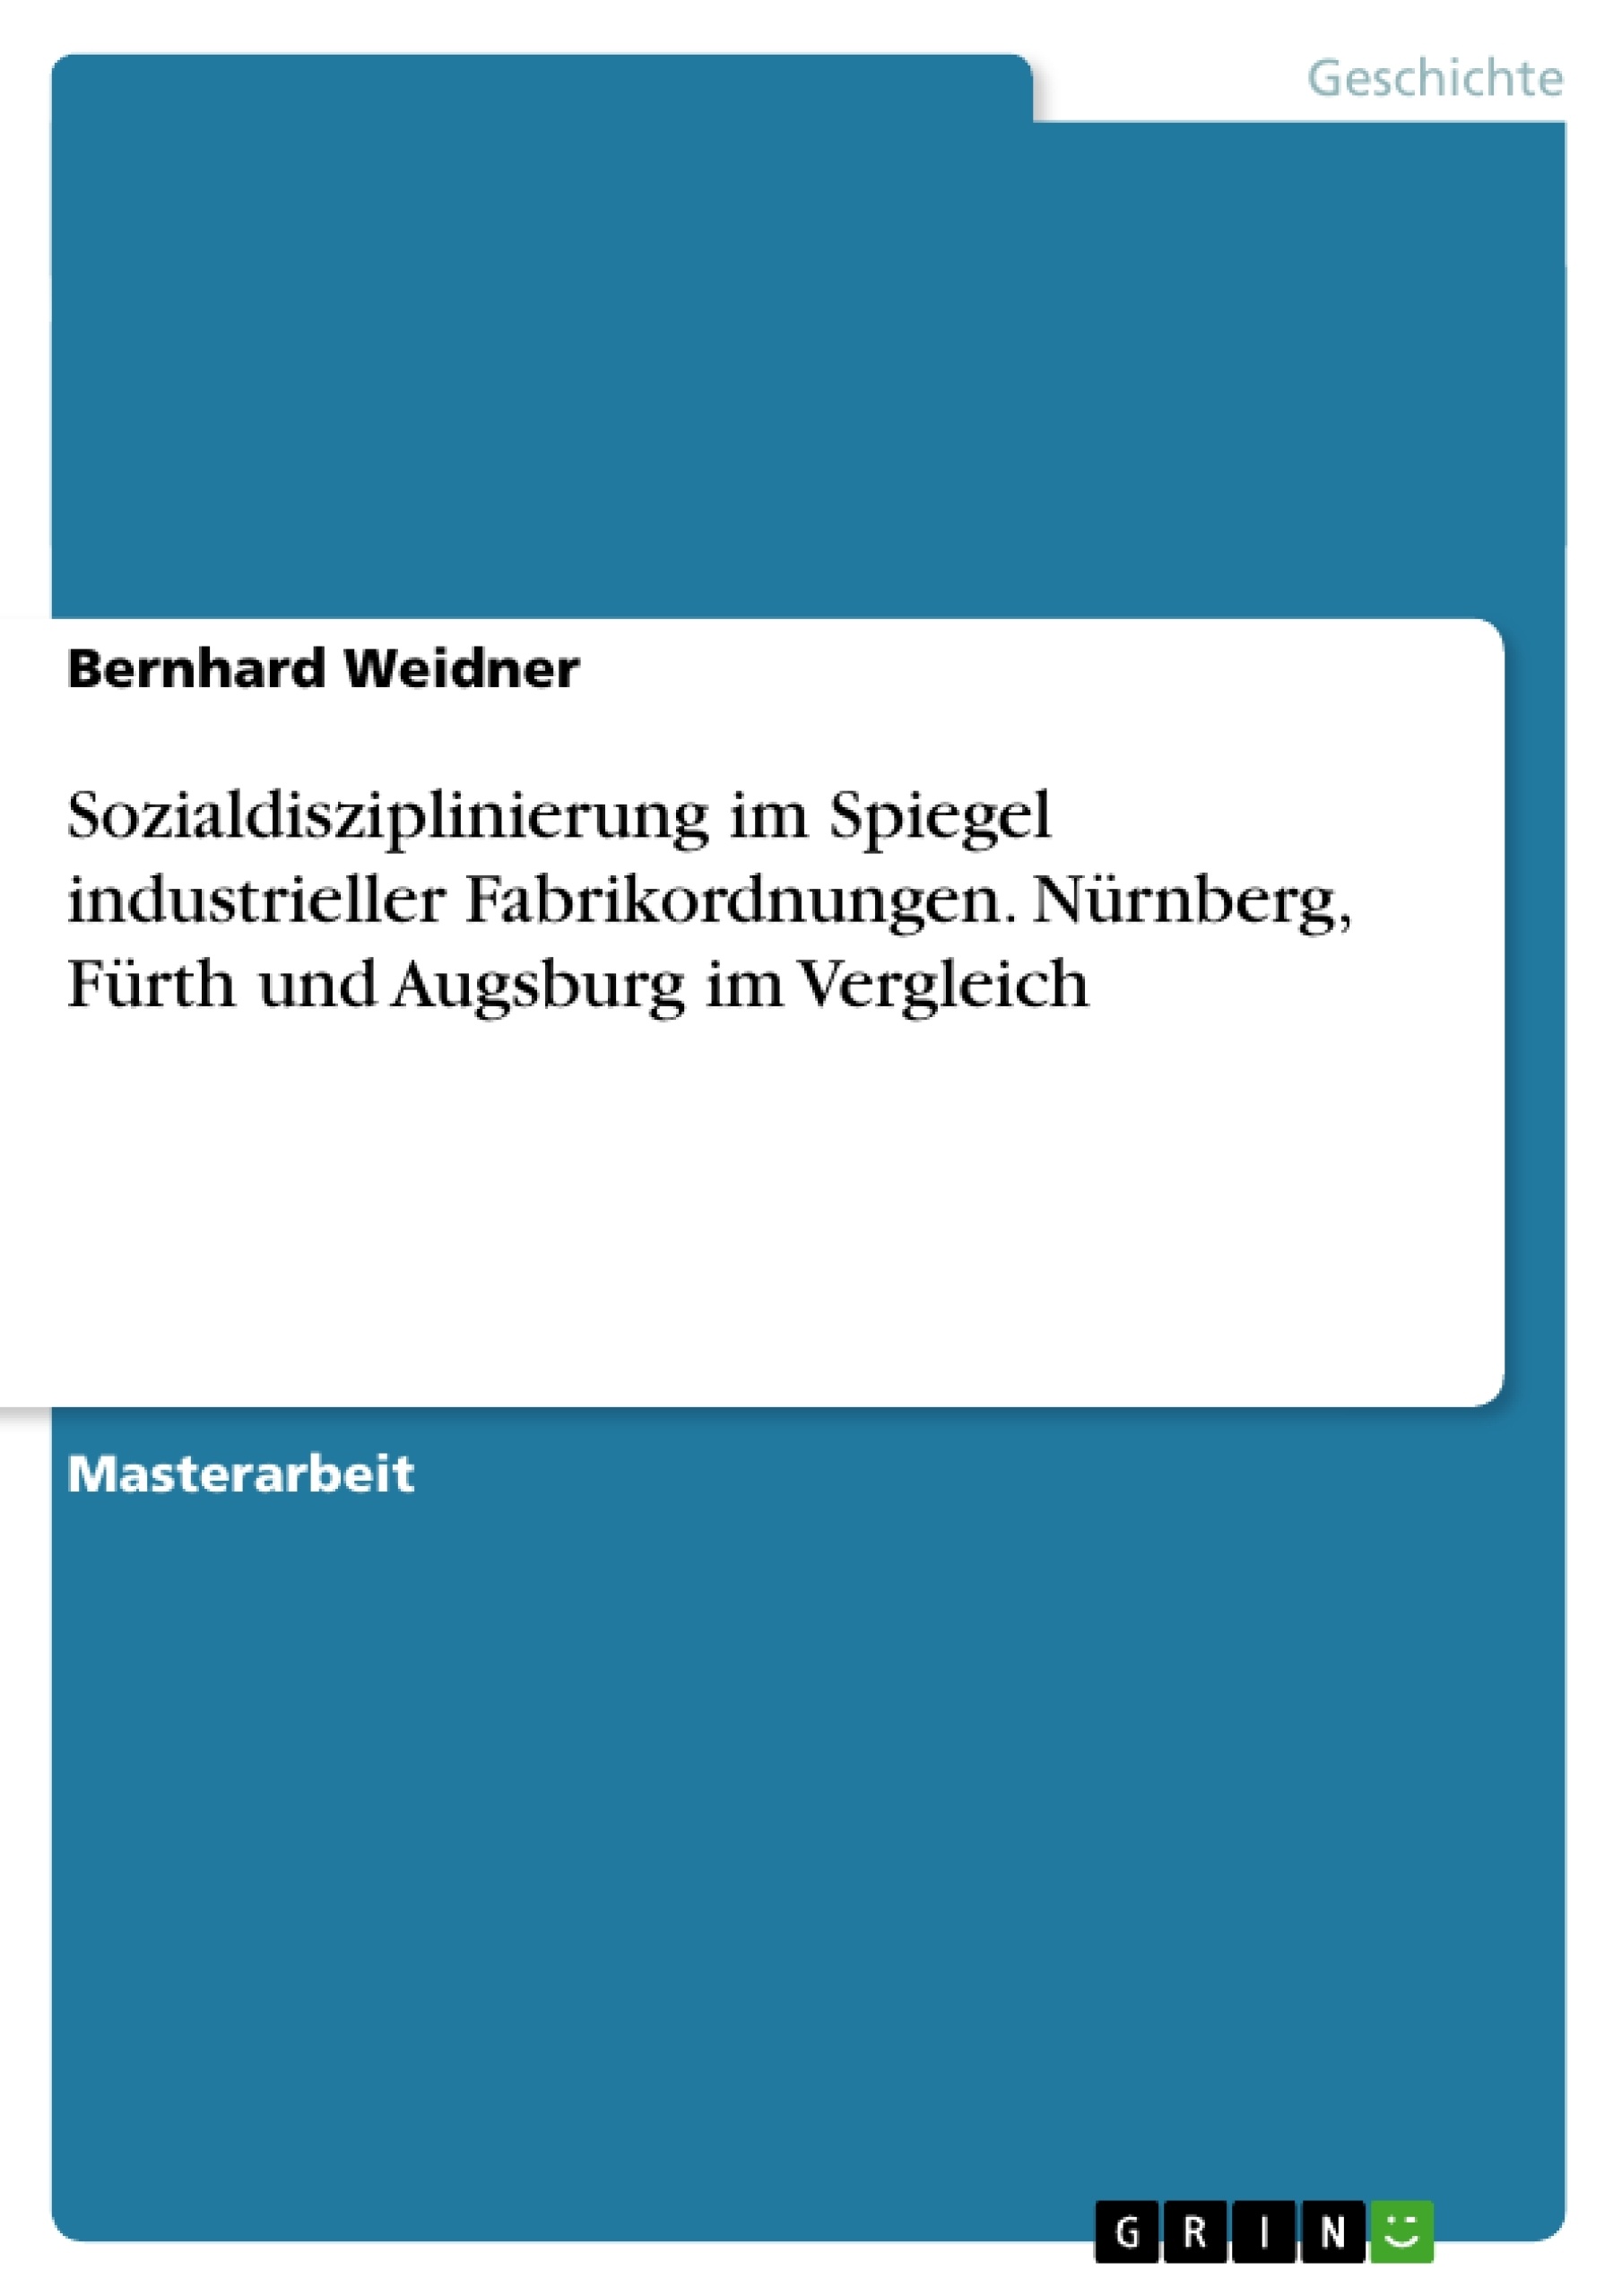 Título: Sozialdisziplinierung im Spiegel industrieller Fabrikordnungen. Nürnberg, Fürth und Augsburg im Vergleich